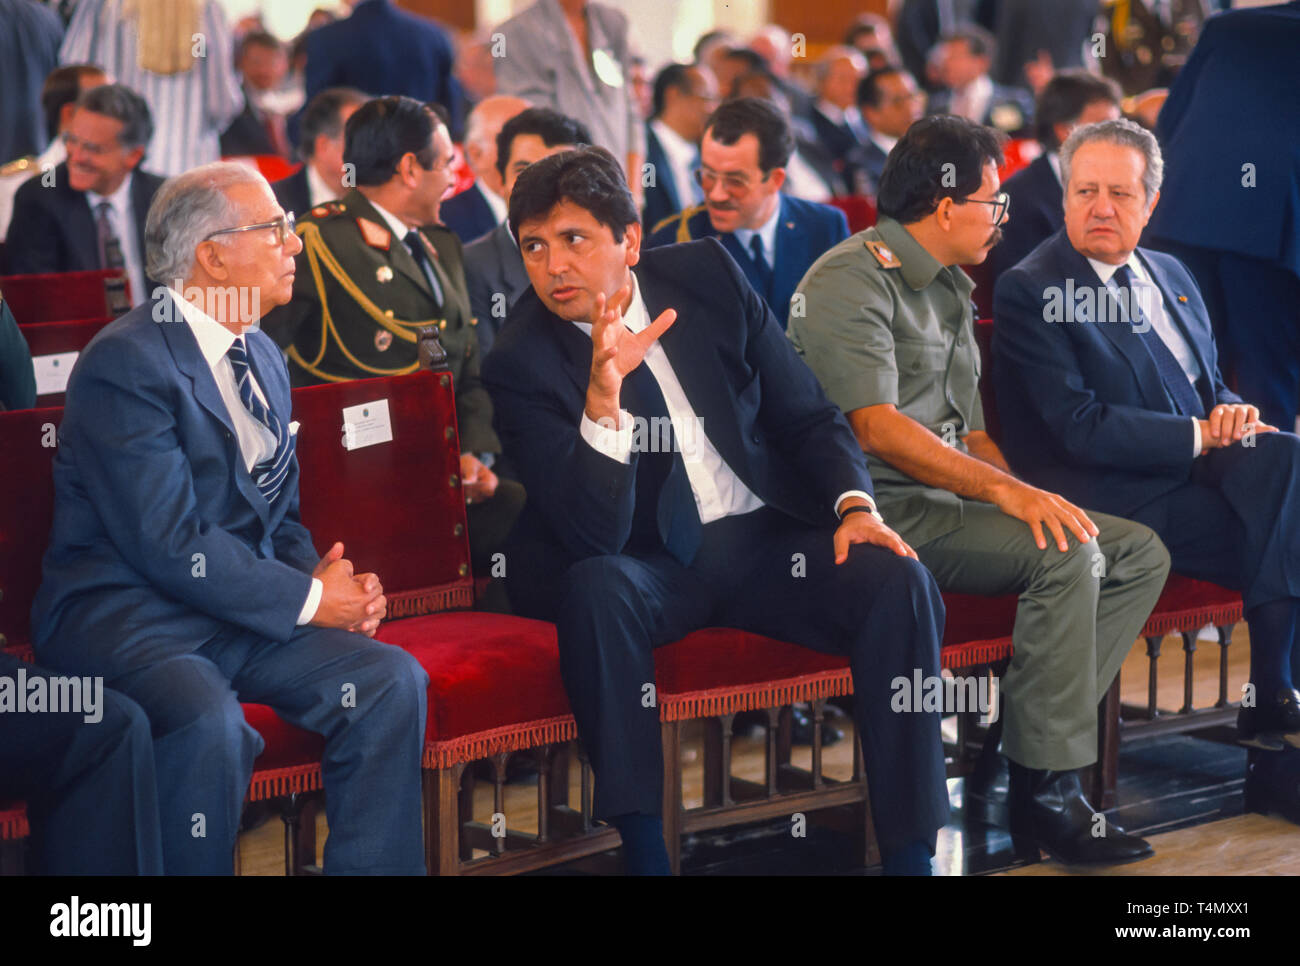 CARACAS, Venezuela - Februar 3, 1989 Präsident von Peru: Alan Garcia, Mitte und Nicaraguas Präsident Daniel Ortega (in Uniform), besuchen Einweihung Venezuelas Präsident Carlos Andres Perez. Stockfoto